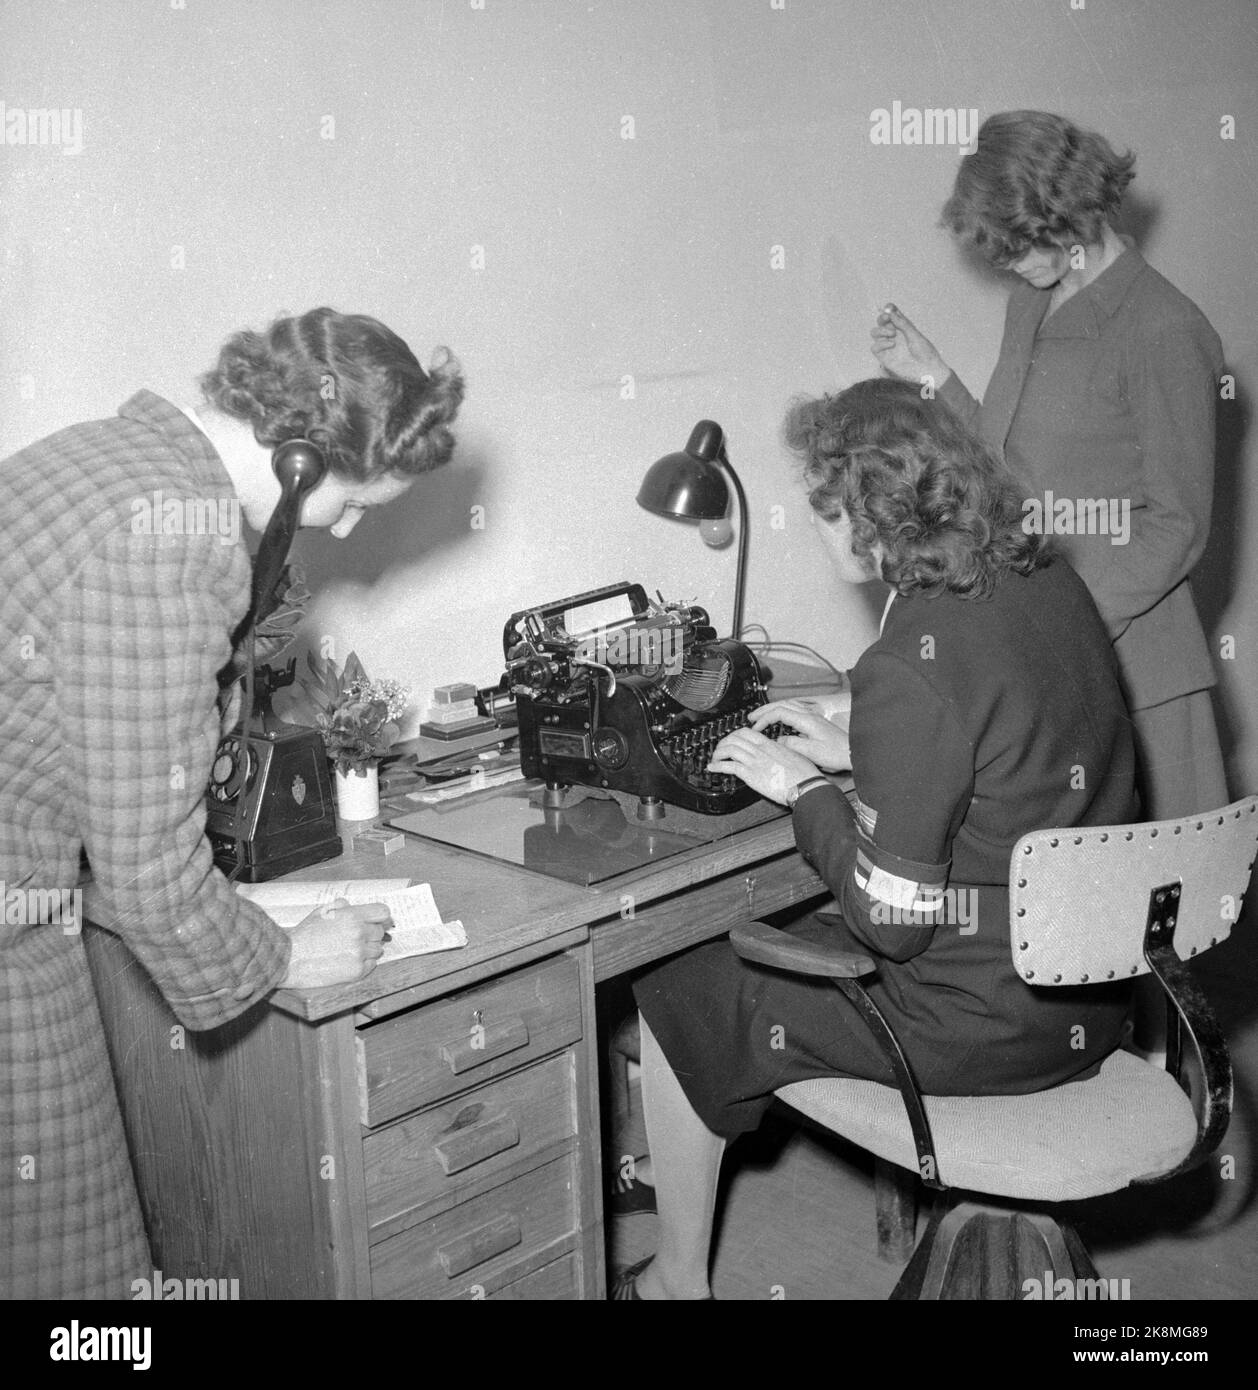 Oslo 19450525 Milorg Damen leisten Widerstandsarbeit. Eine Telefonie, ein Drucker auf der Schreibmaschine und ein Leser. Milorg. Das Bild für die Zeitschrift 'All Womes' Foto: Langemyr / NTB *** das Bild wurde nicht verarbeitet ***** Stockfoto